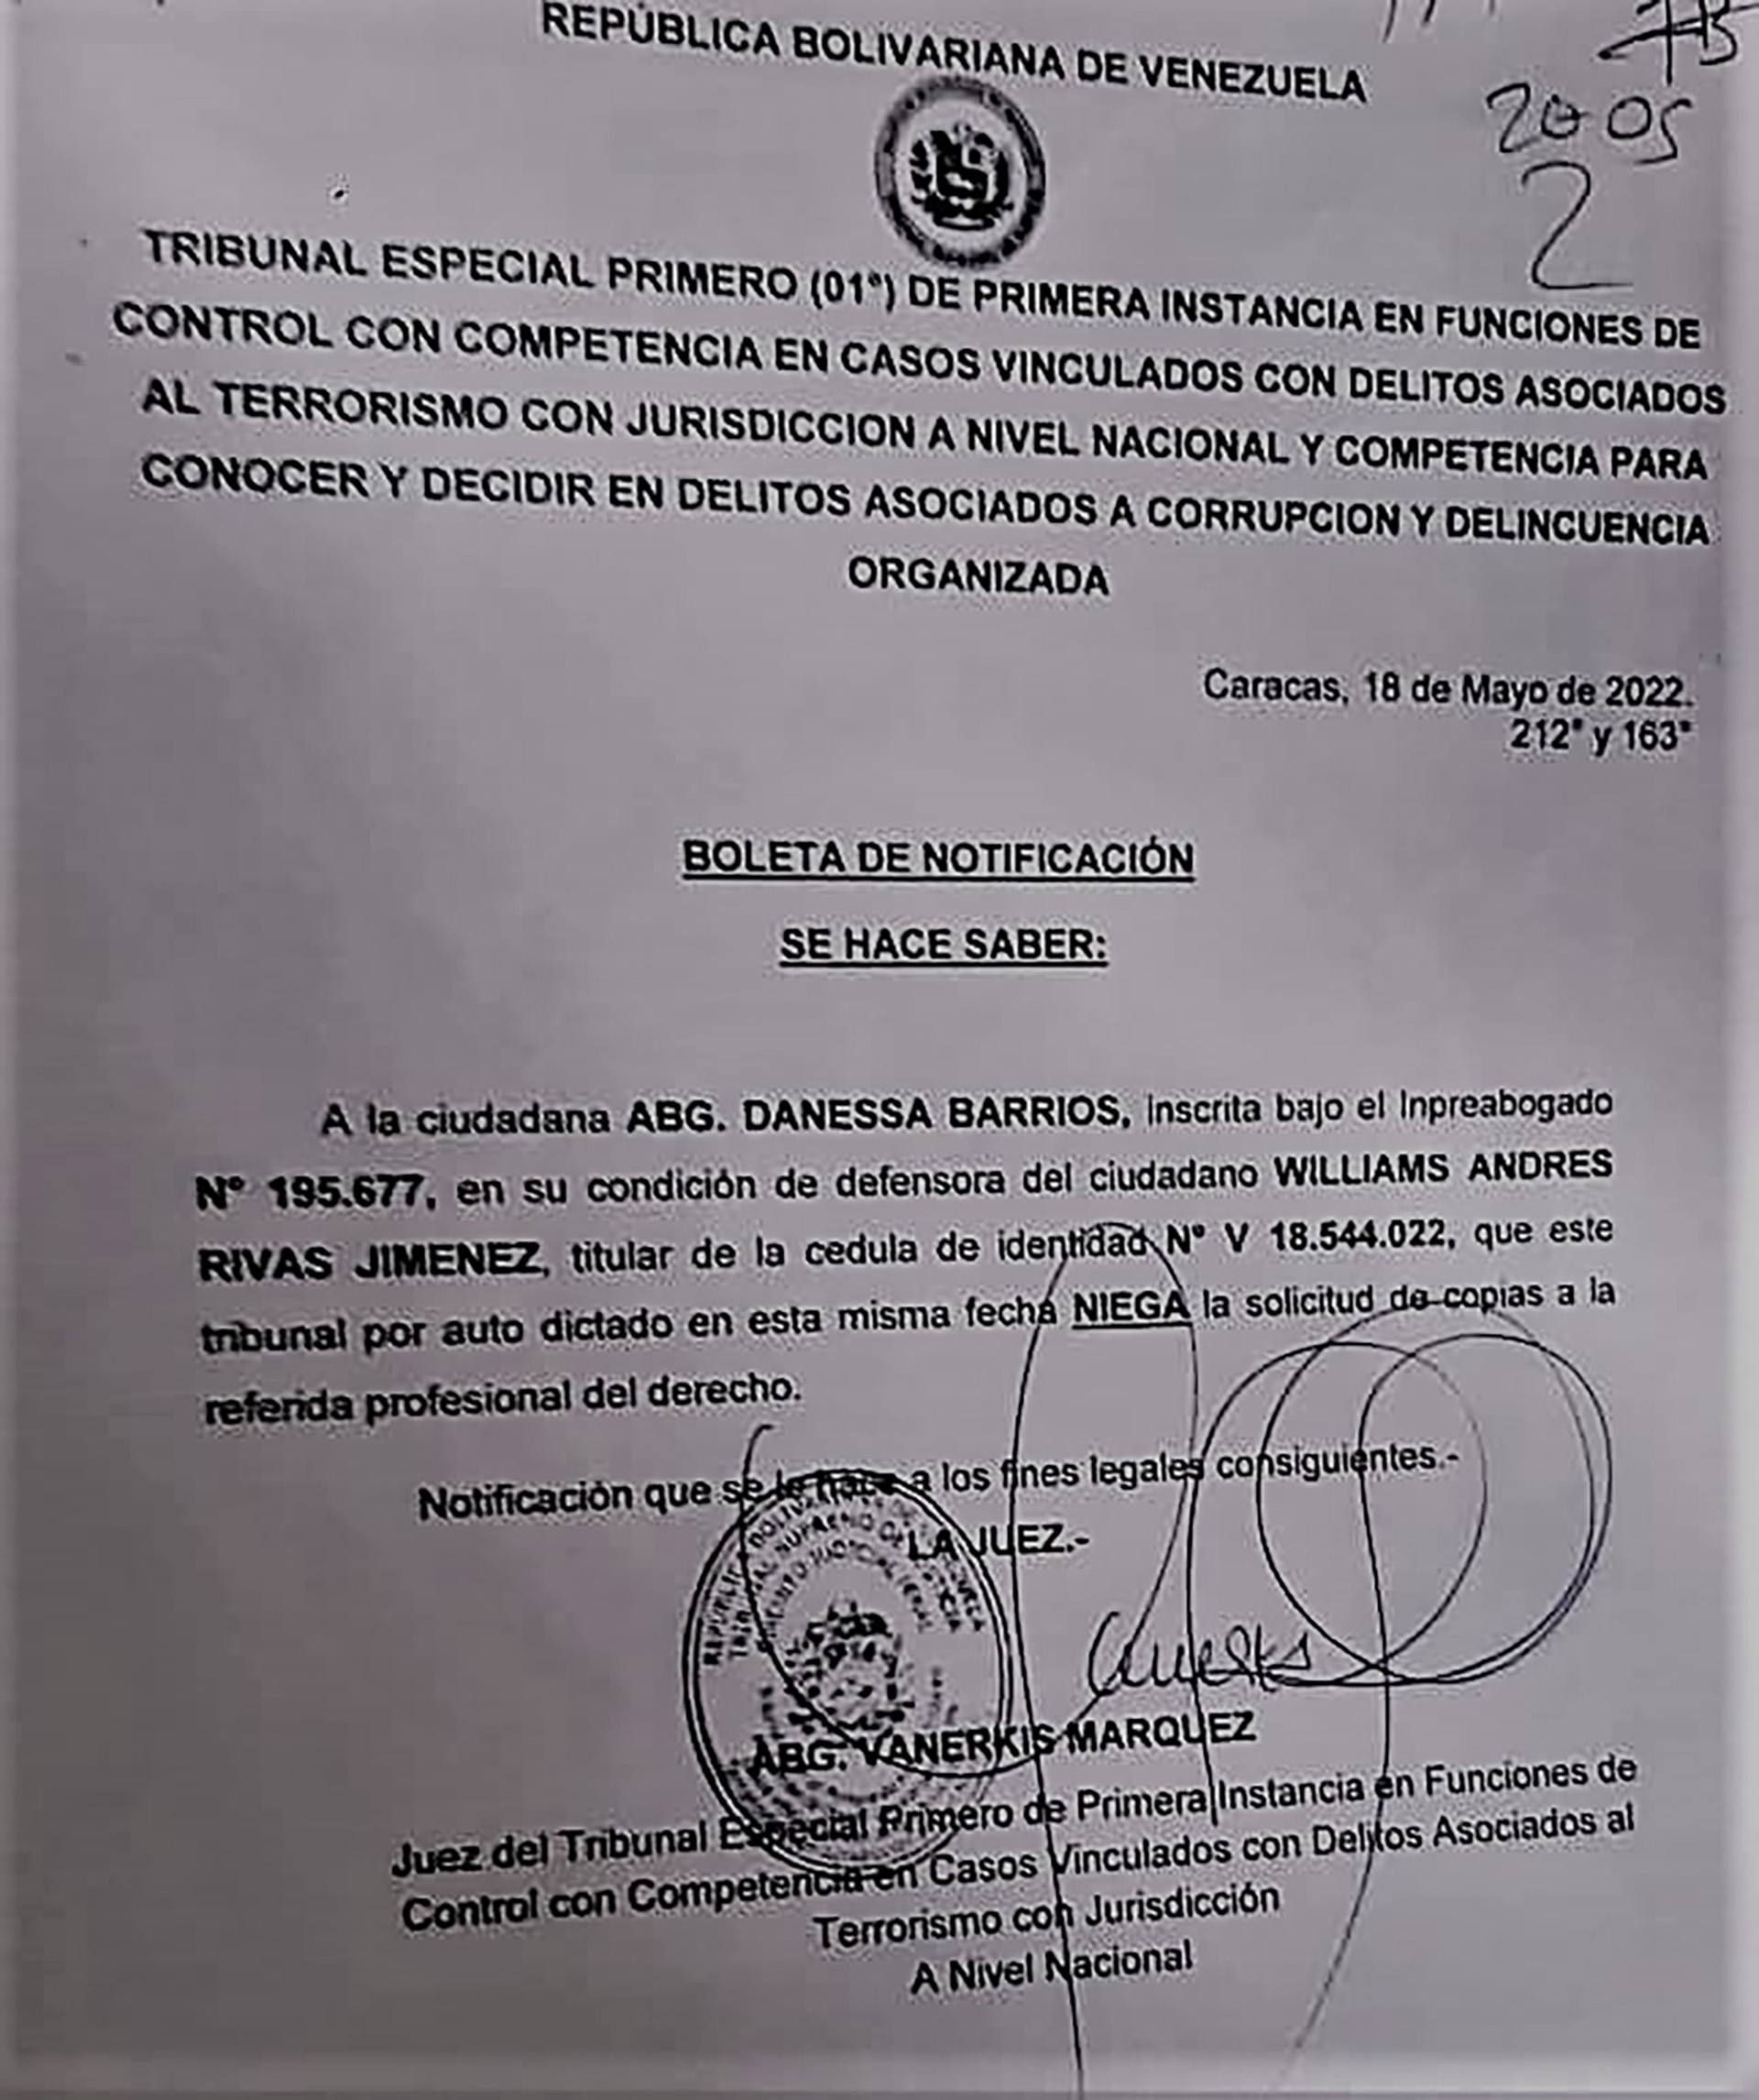 Los jueces ignoran órdenes y obvian procedimientos en el caso del capitán Rivas Jiménez